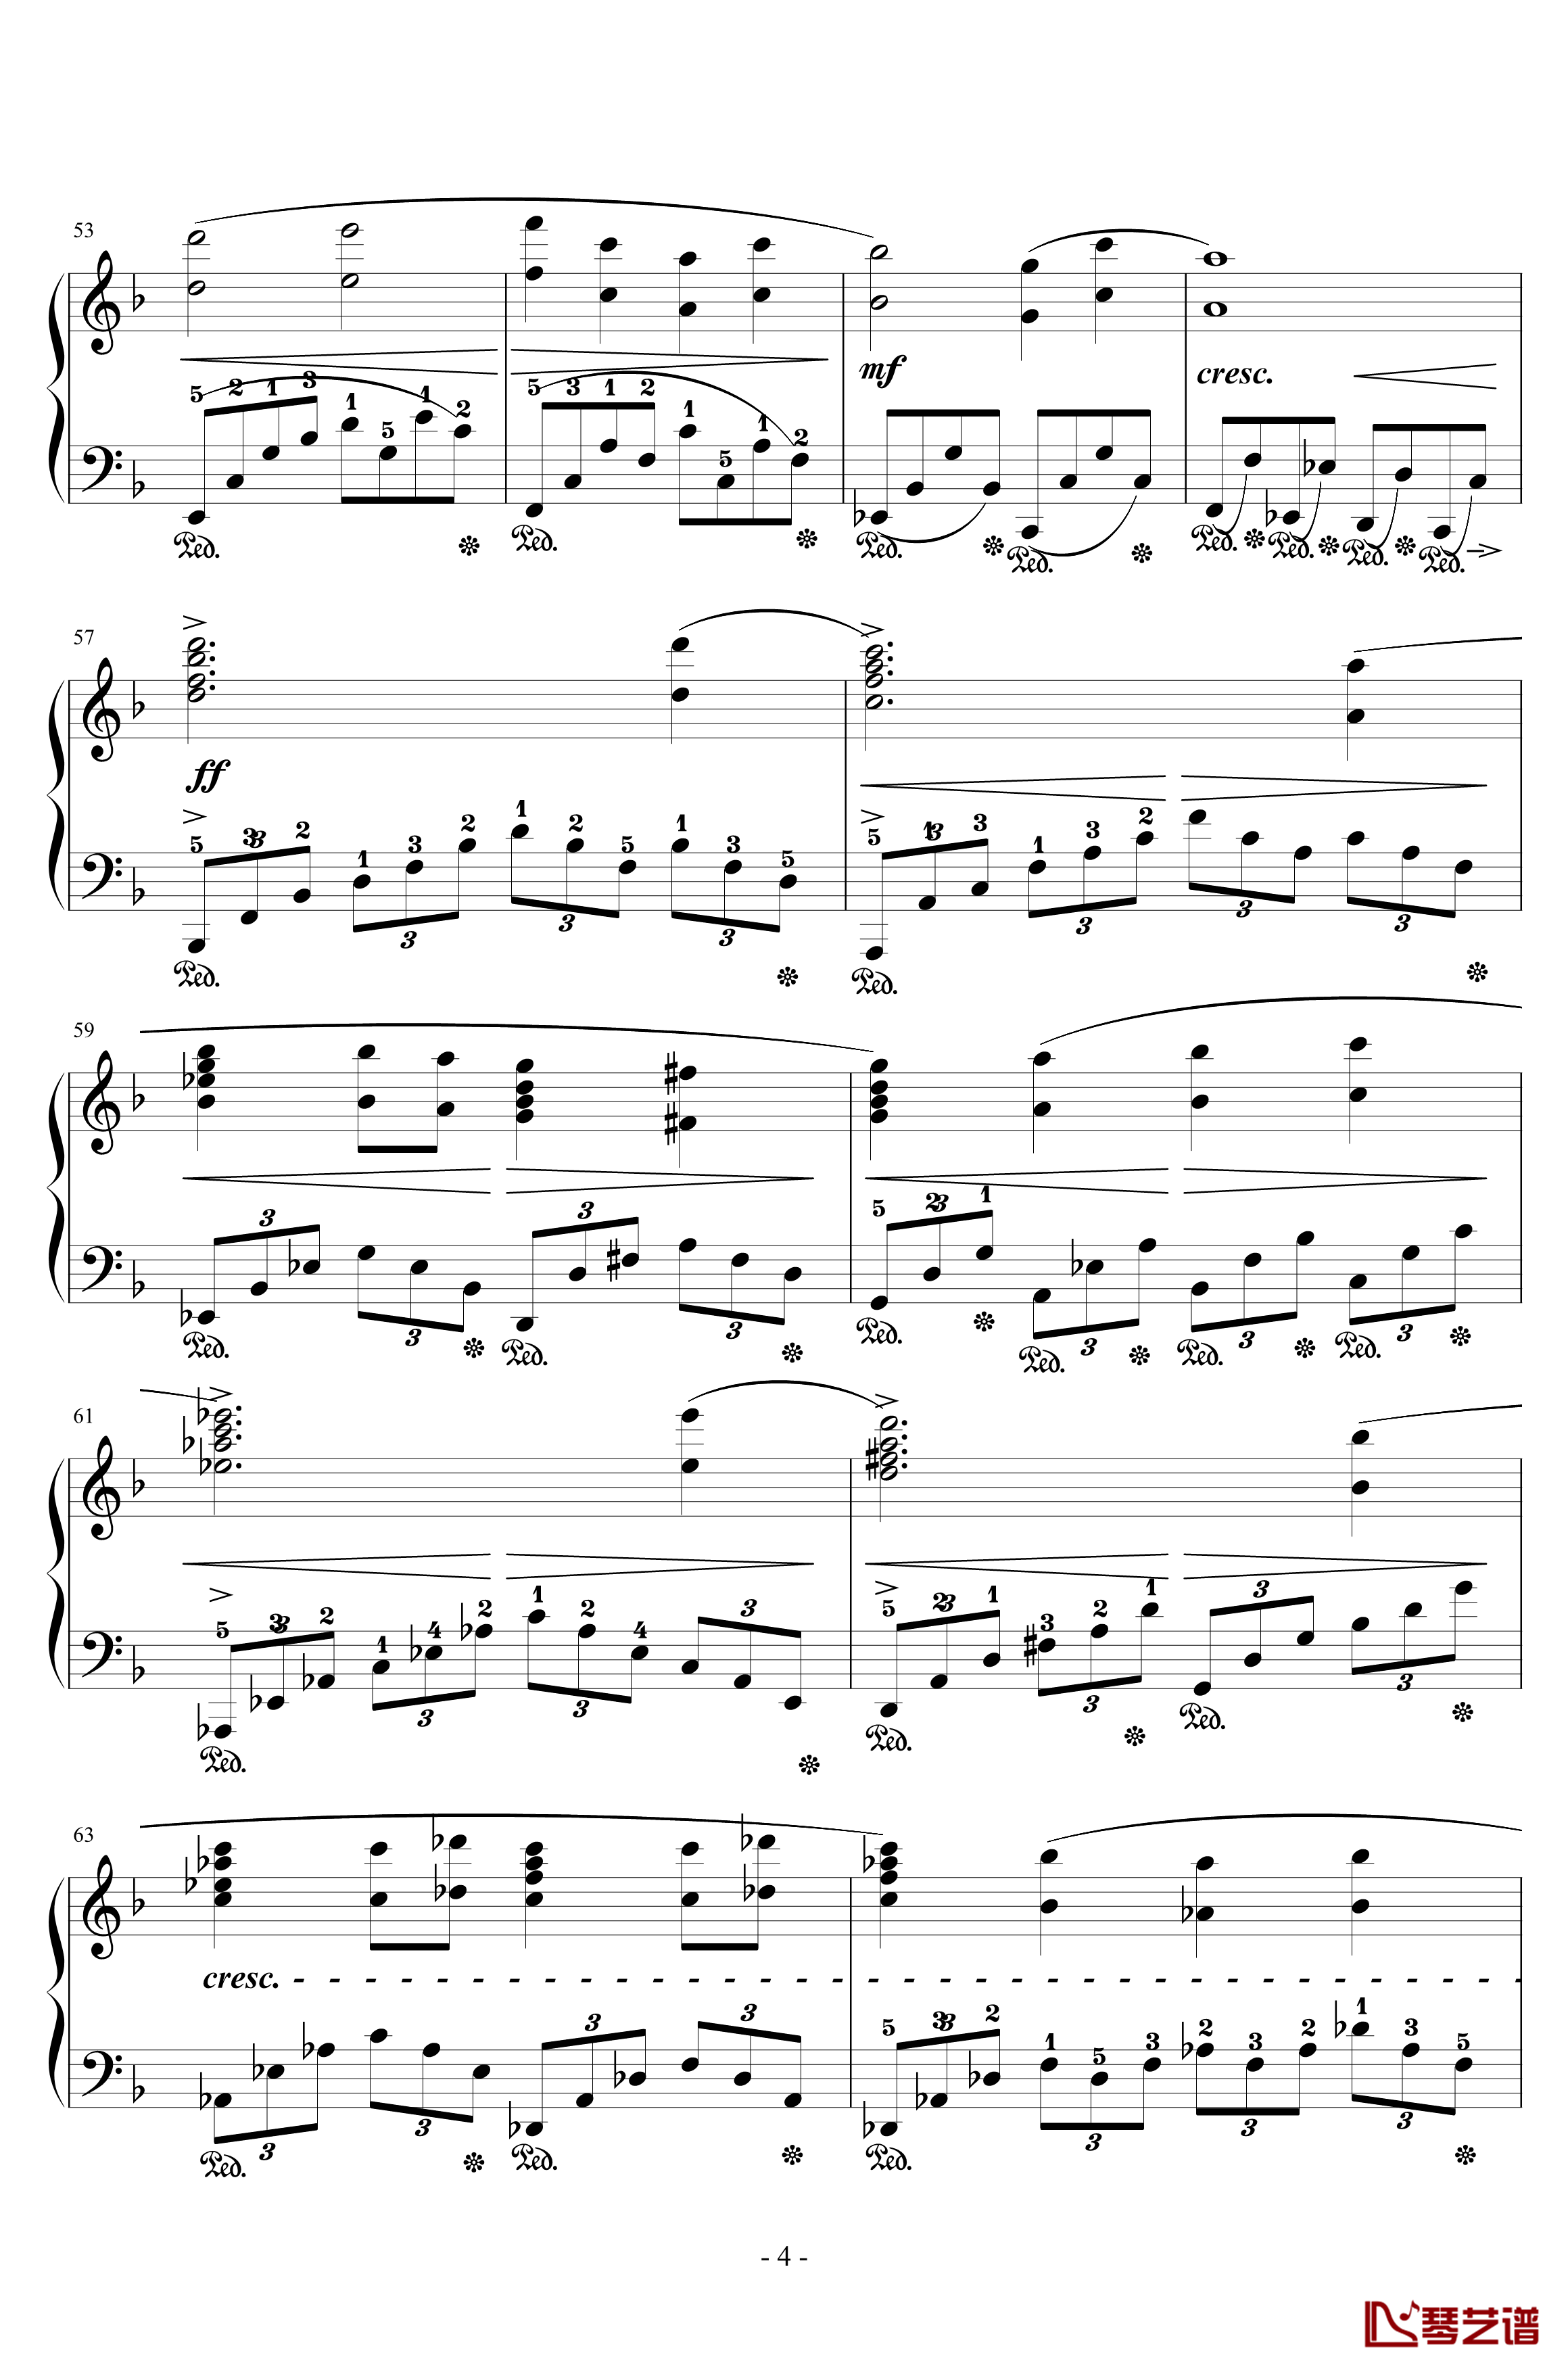 FINAL FANTASY钢琴谱-ENCORE-植松伸夫4